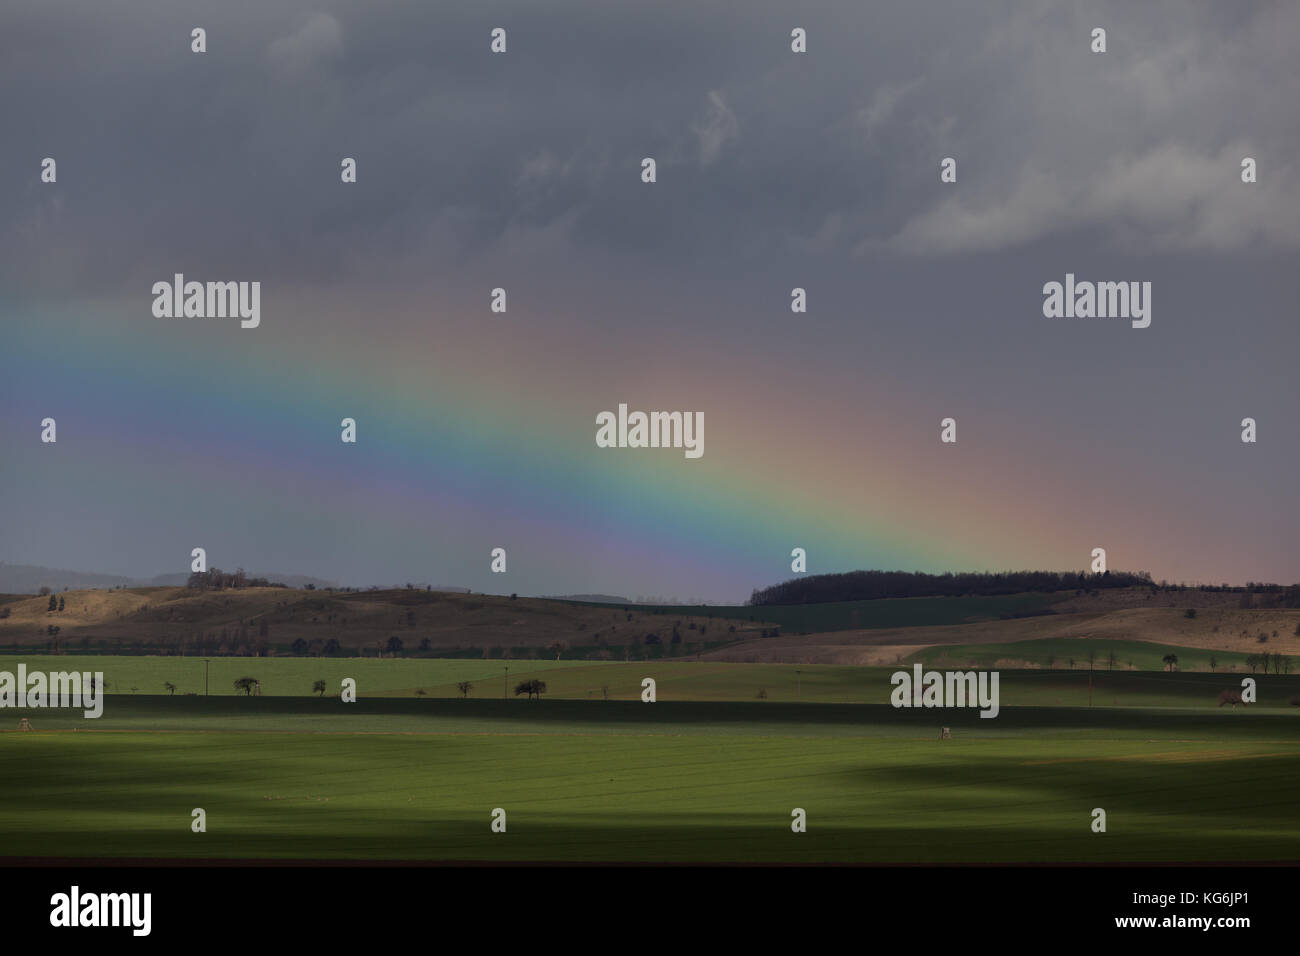 Regenstimmung mit Regenbogen Stock Photo